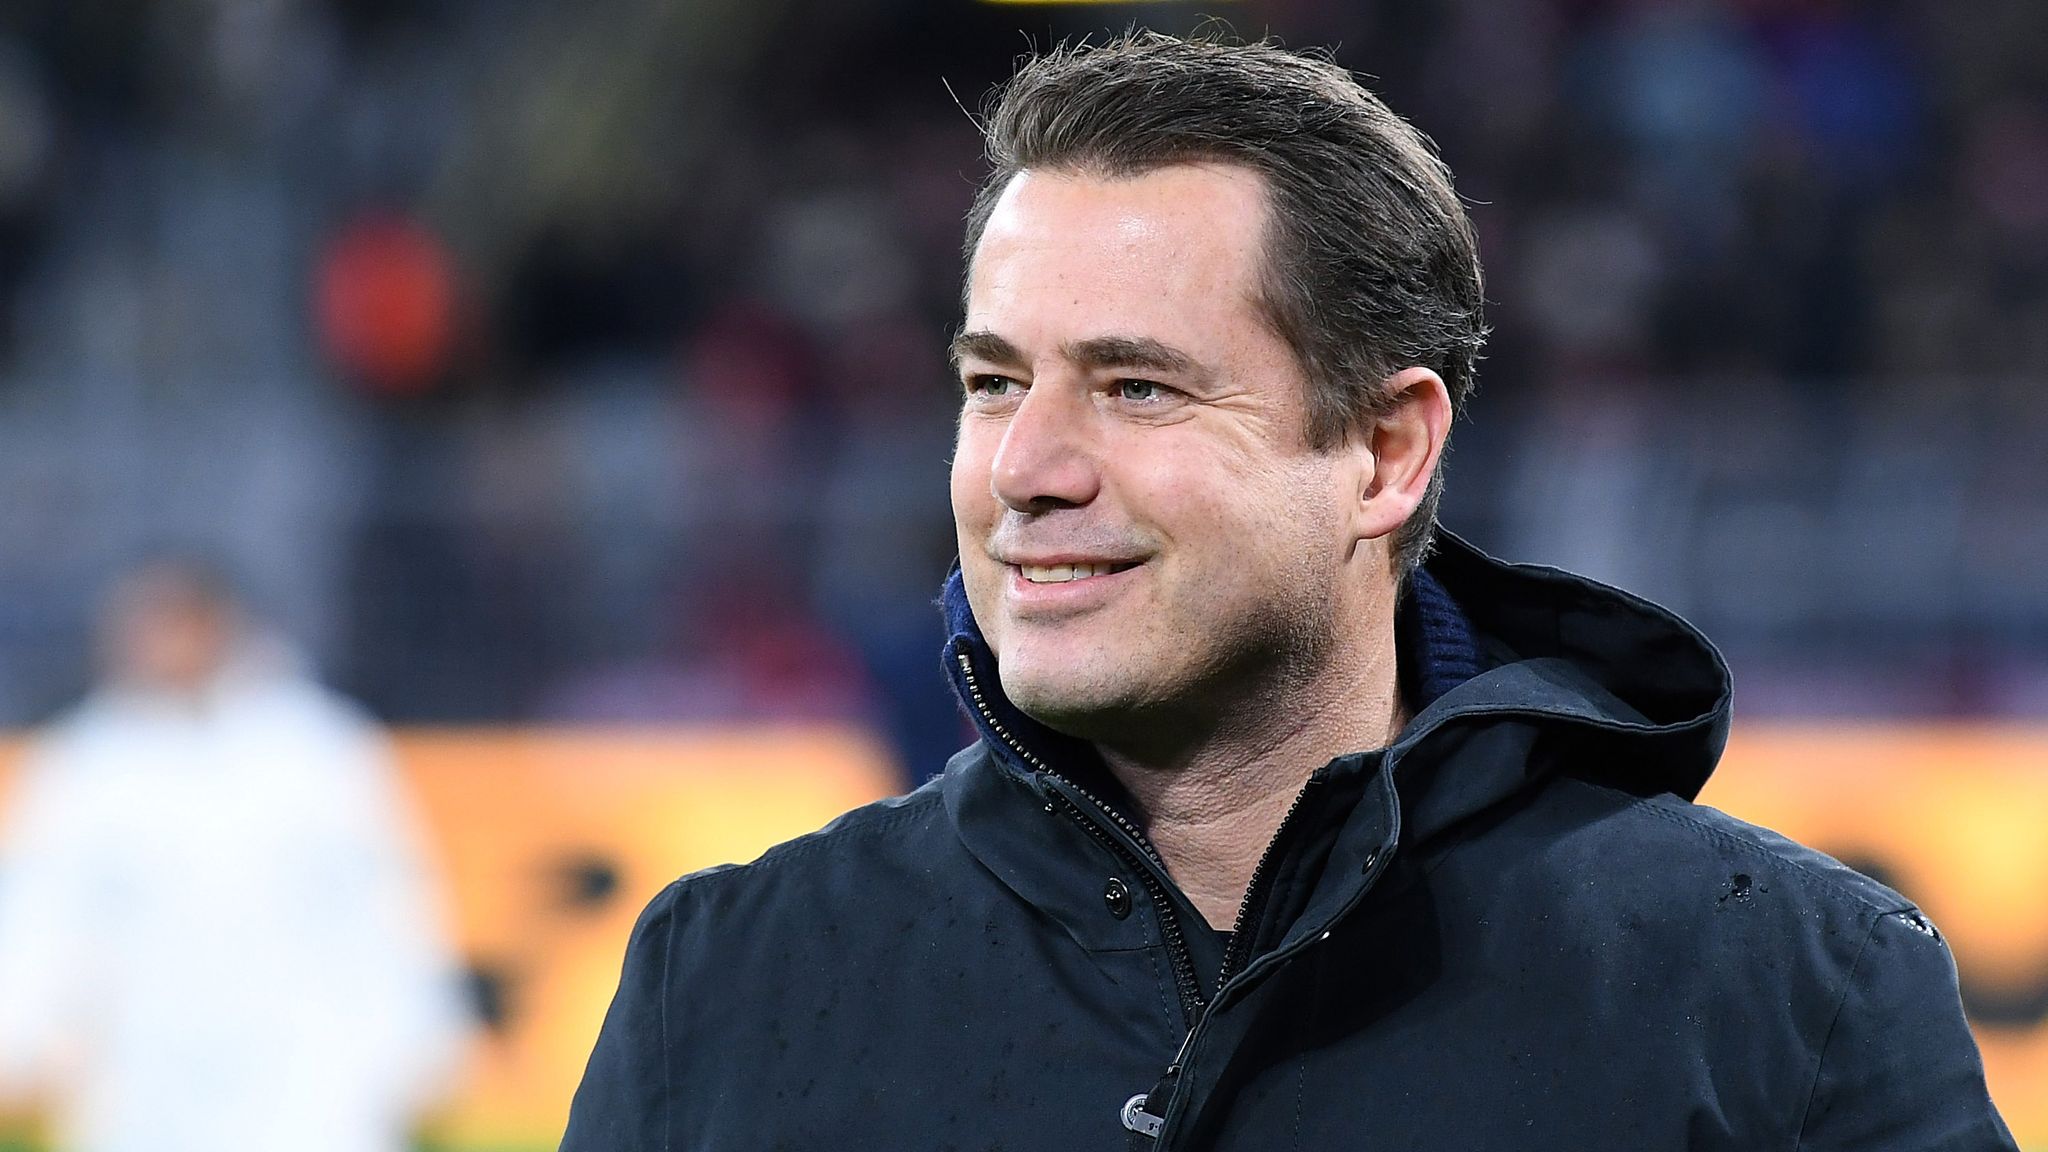 Neuer Sportchef bei Borussia Dortmund: Lars Ricken übernimmt Geschäftsführung Sport